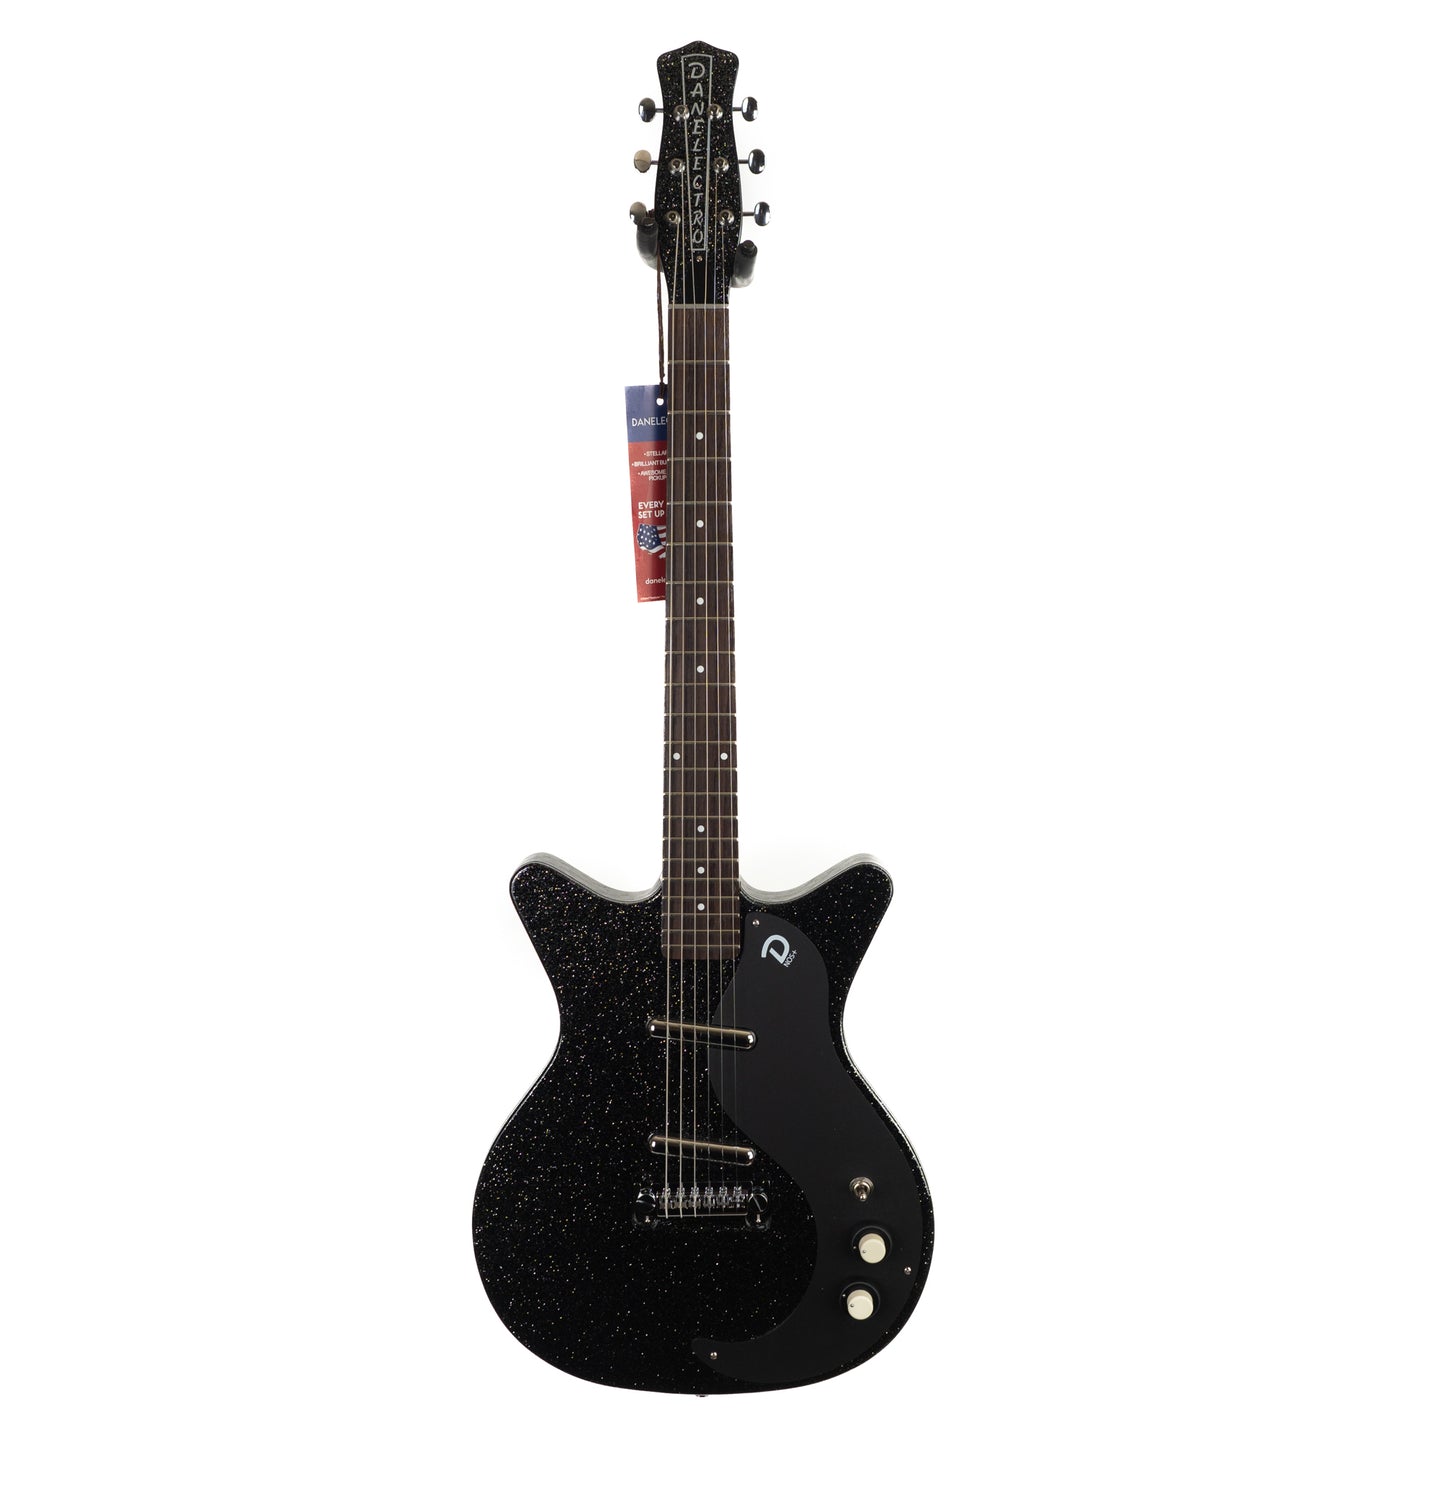 Danelectro Blackout 59 black metal flake ultralight electric guitar 6lbs, 7oz.